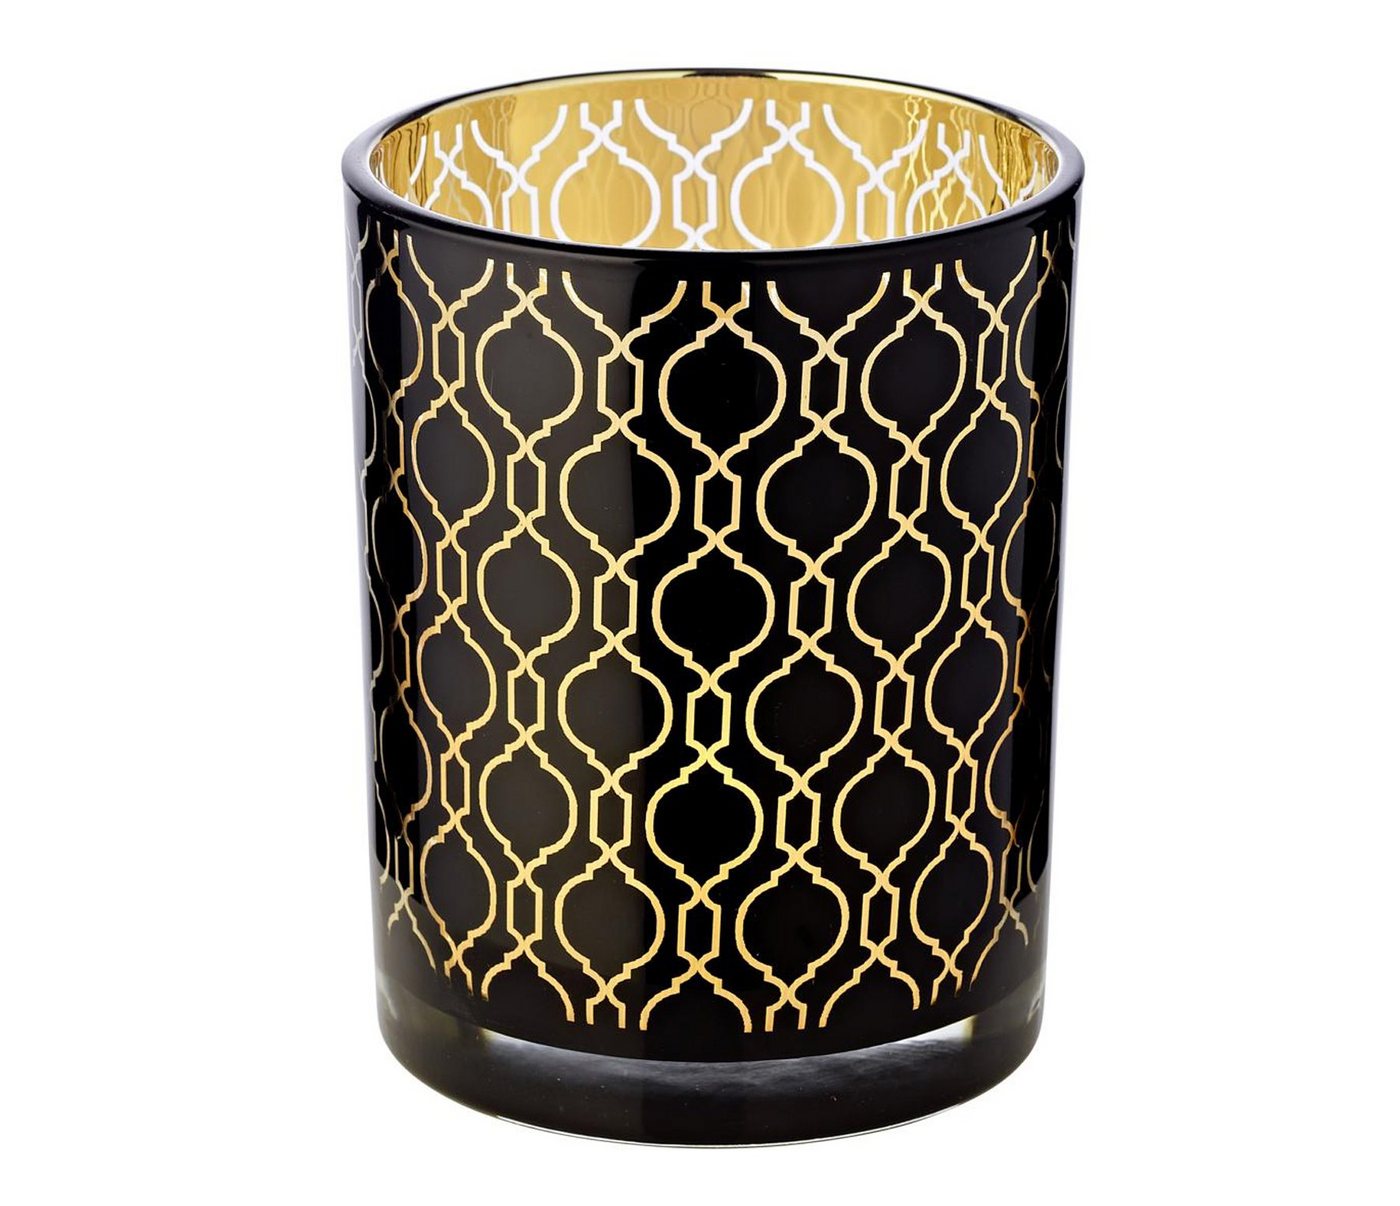 EDZARD Windlicht Raute, Kerzenglas mit Rauten-Motiv in Gold-Optik, Teelichtglas für Teelichter, Höhe 13 cm, Ø 10 cm von EDZARD